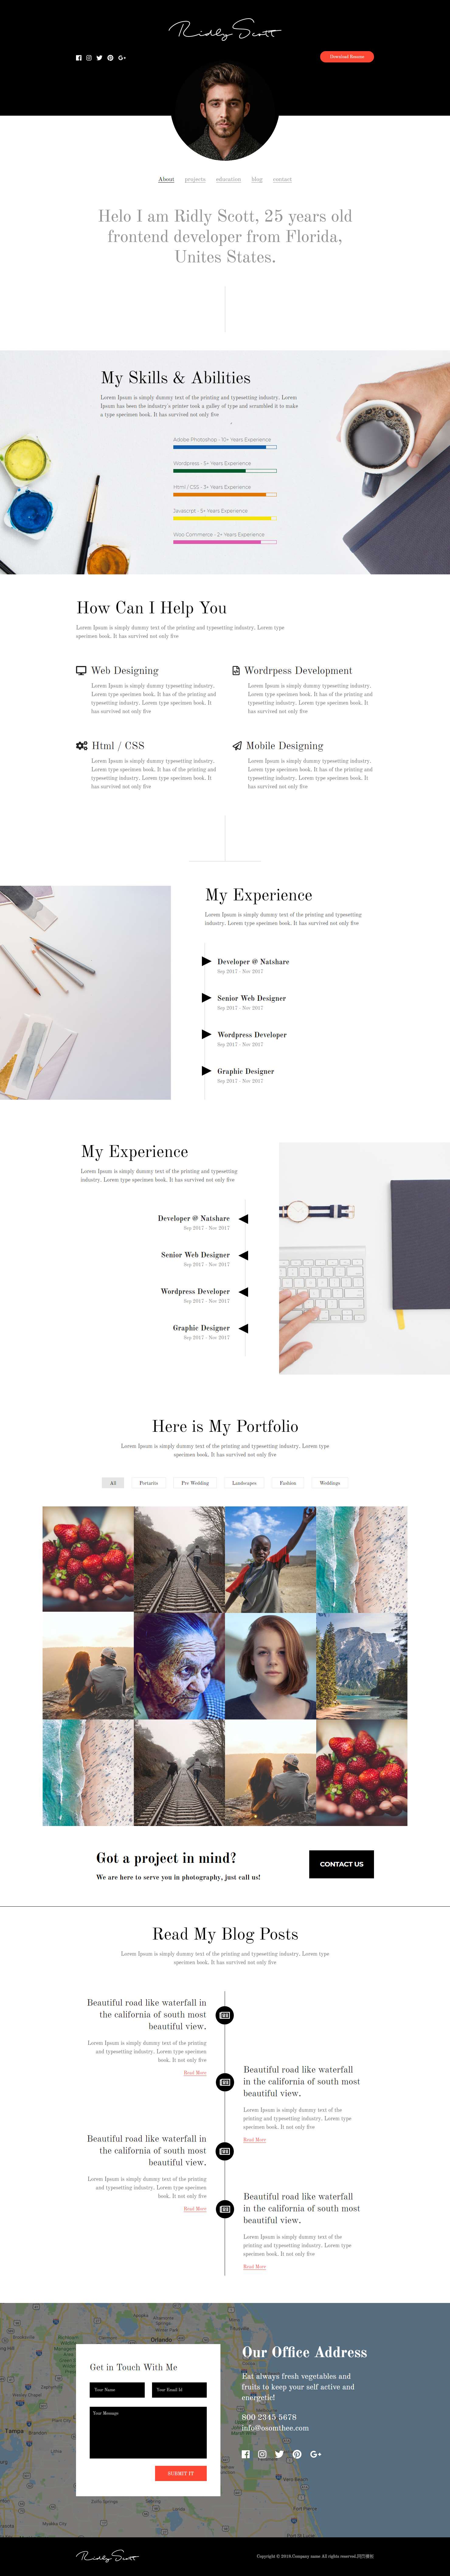 简洁风格的UI设计师作品展示博客网站模板下载